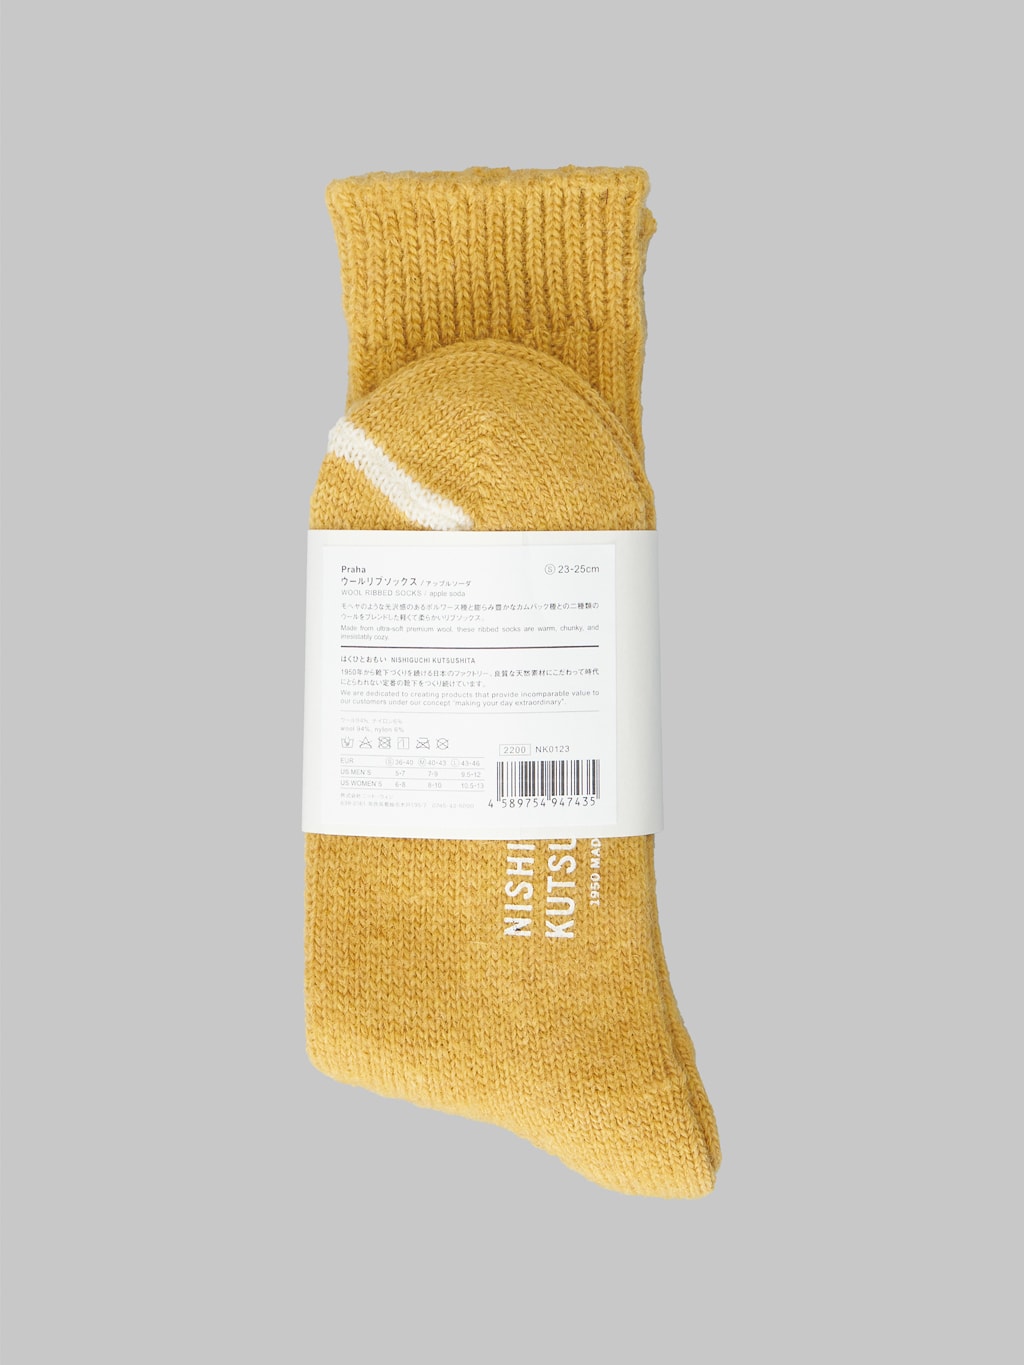 nishiguchi kutsushita wool ribbed socks apple soda fabric texture